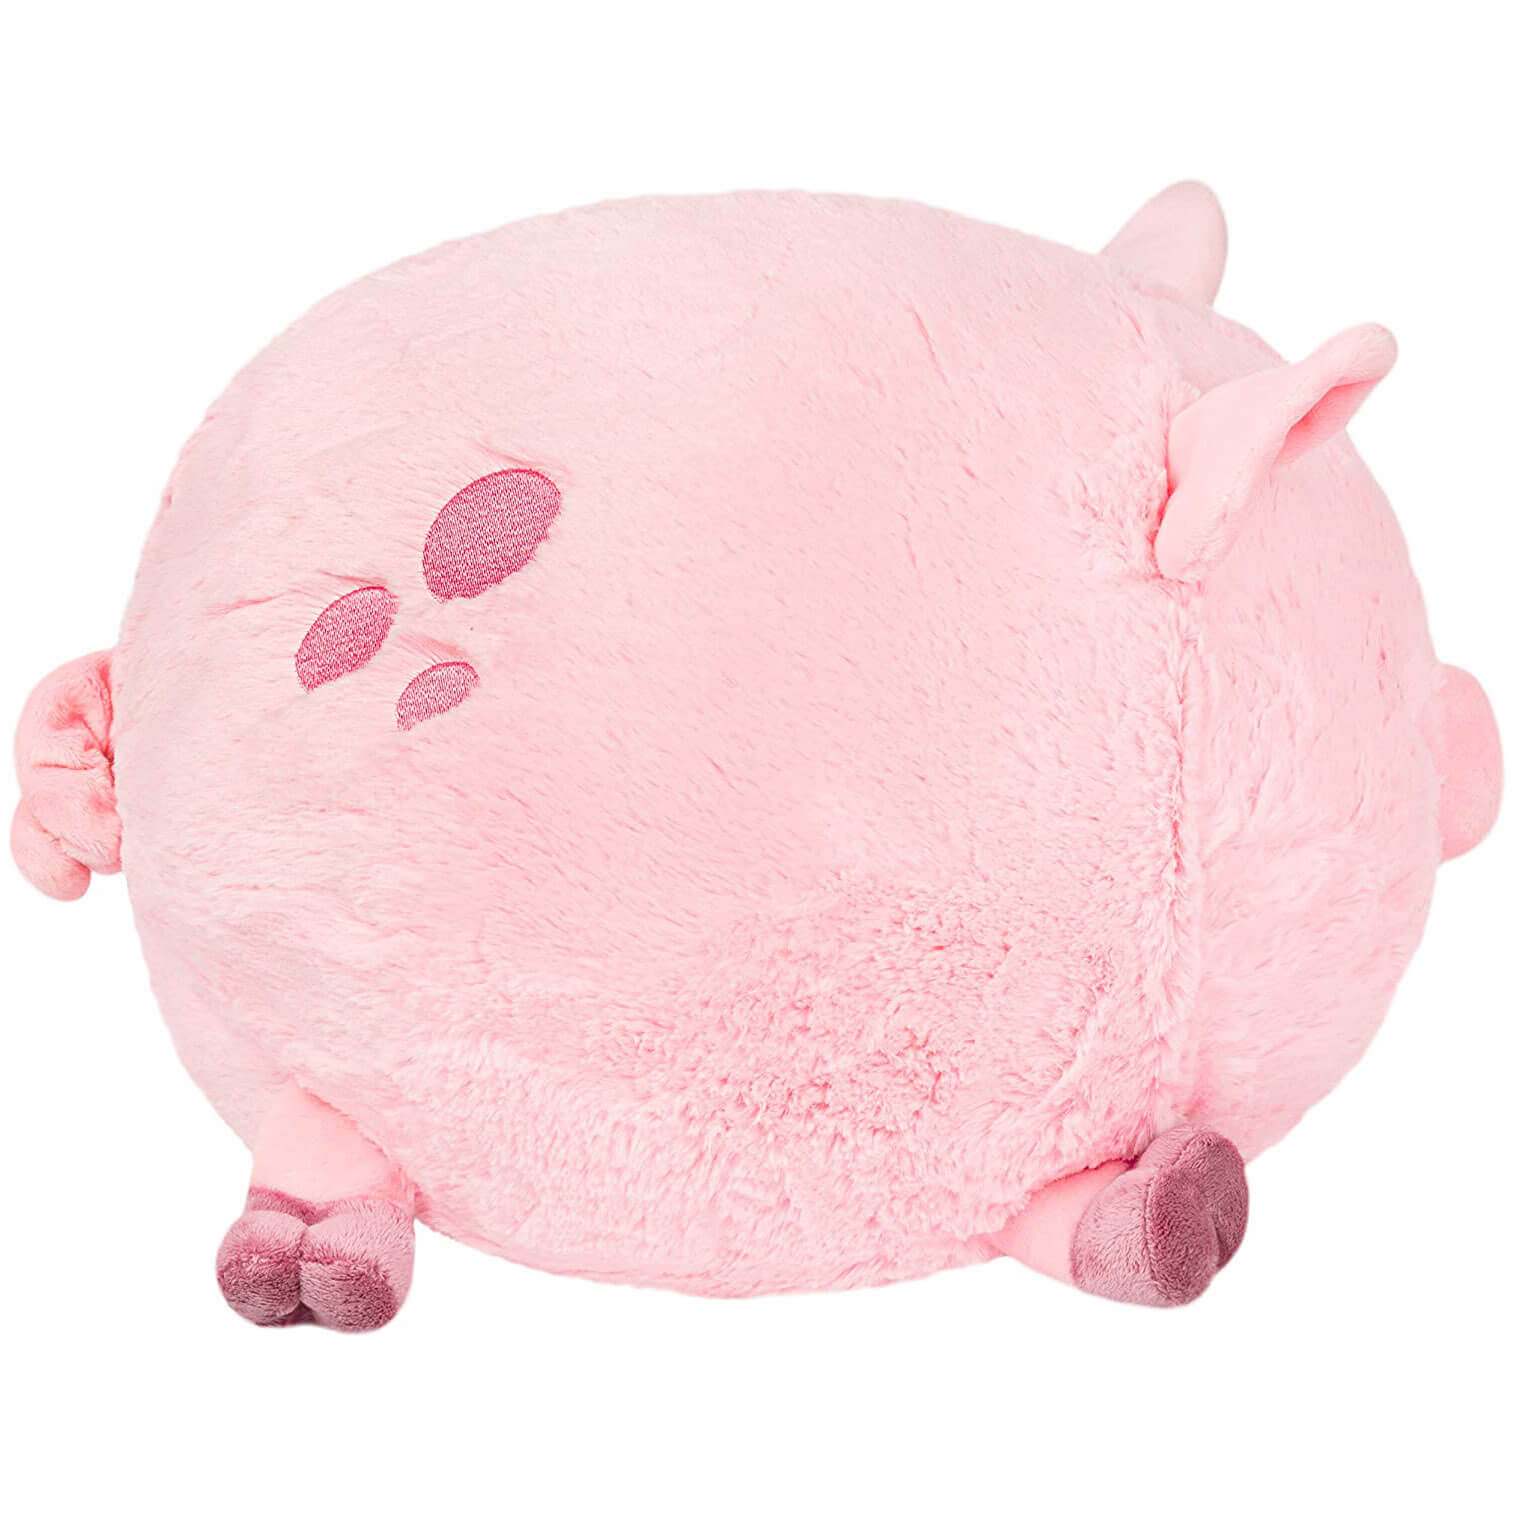 Squishable Piggy Plush